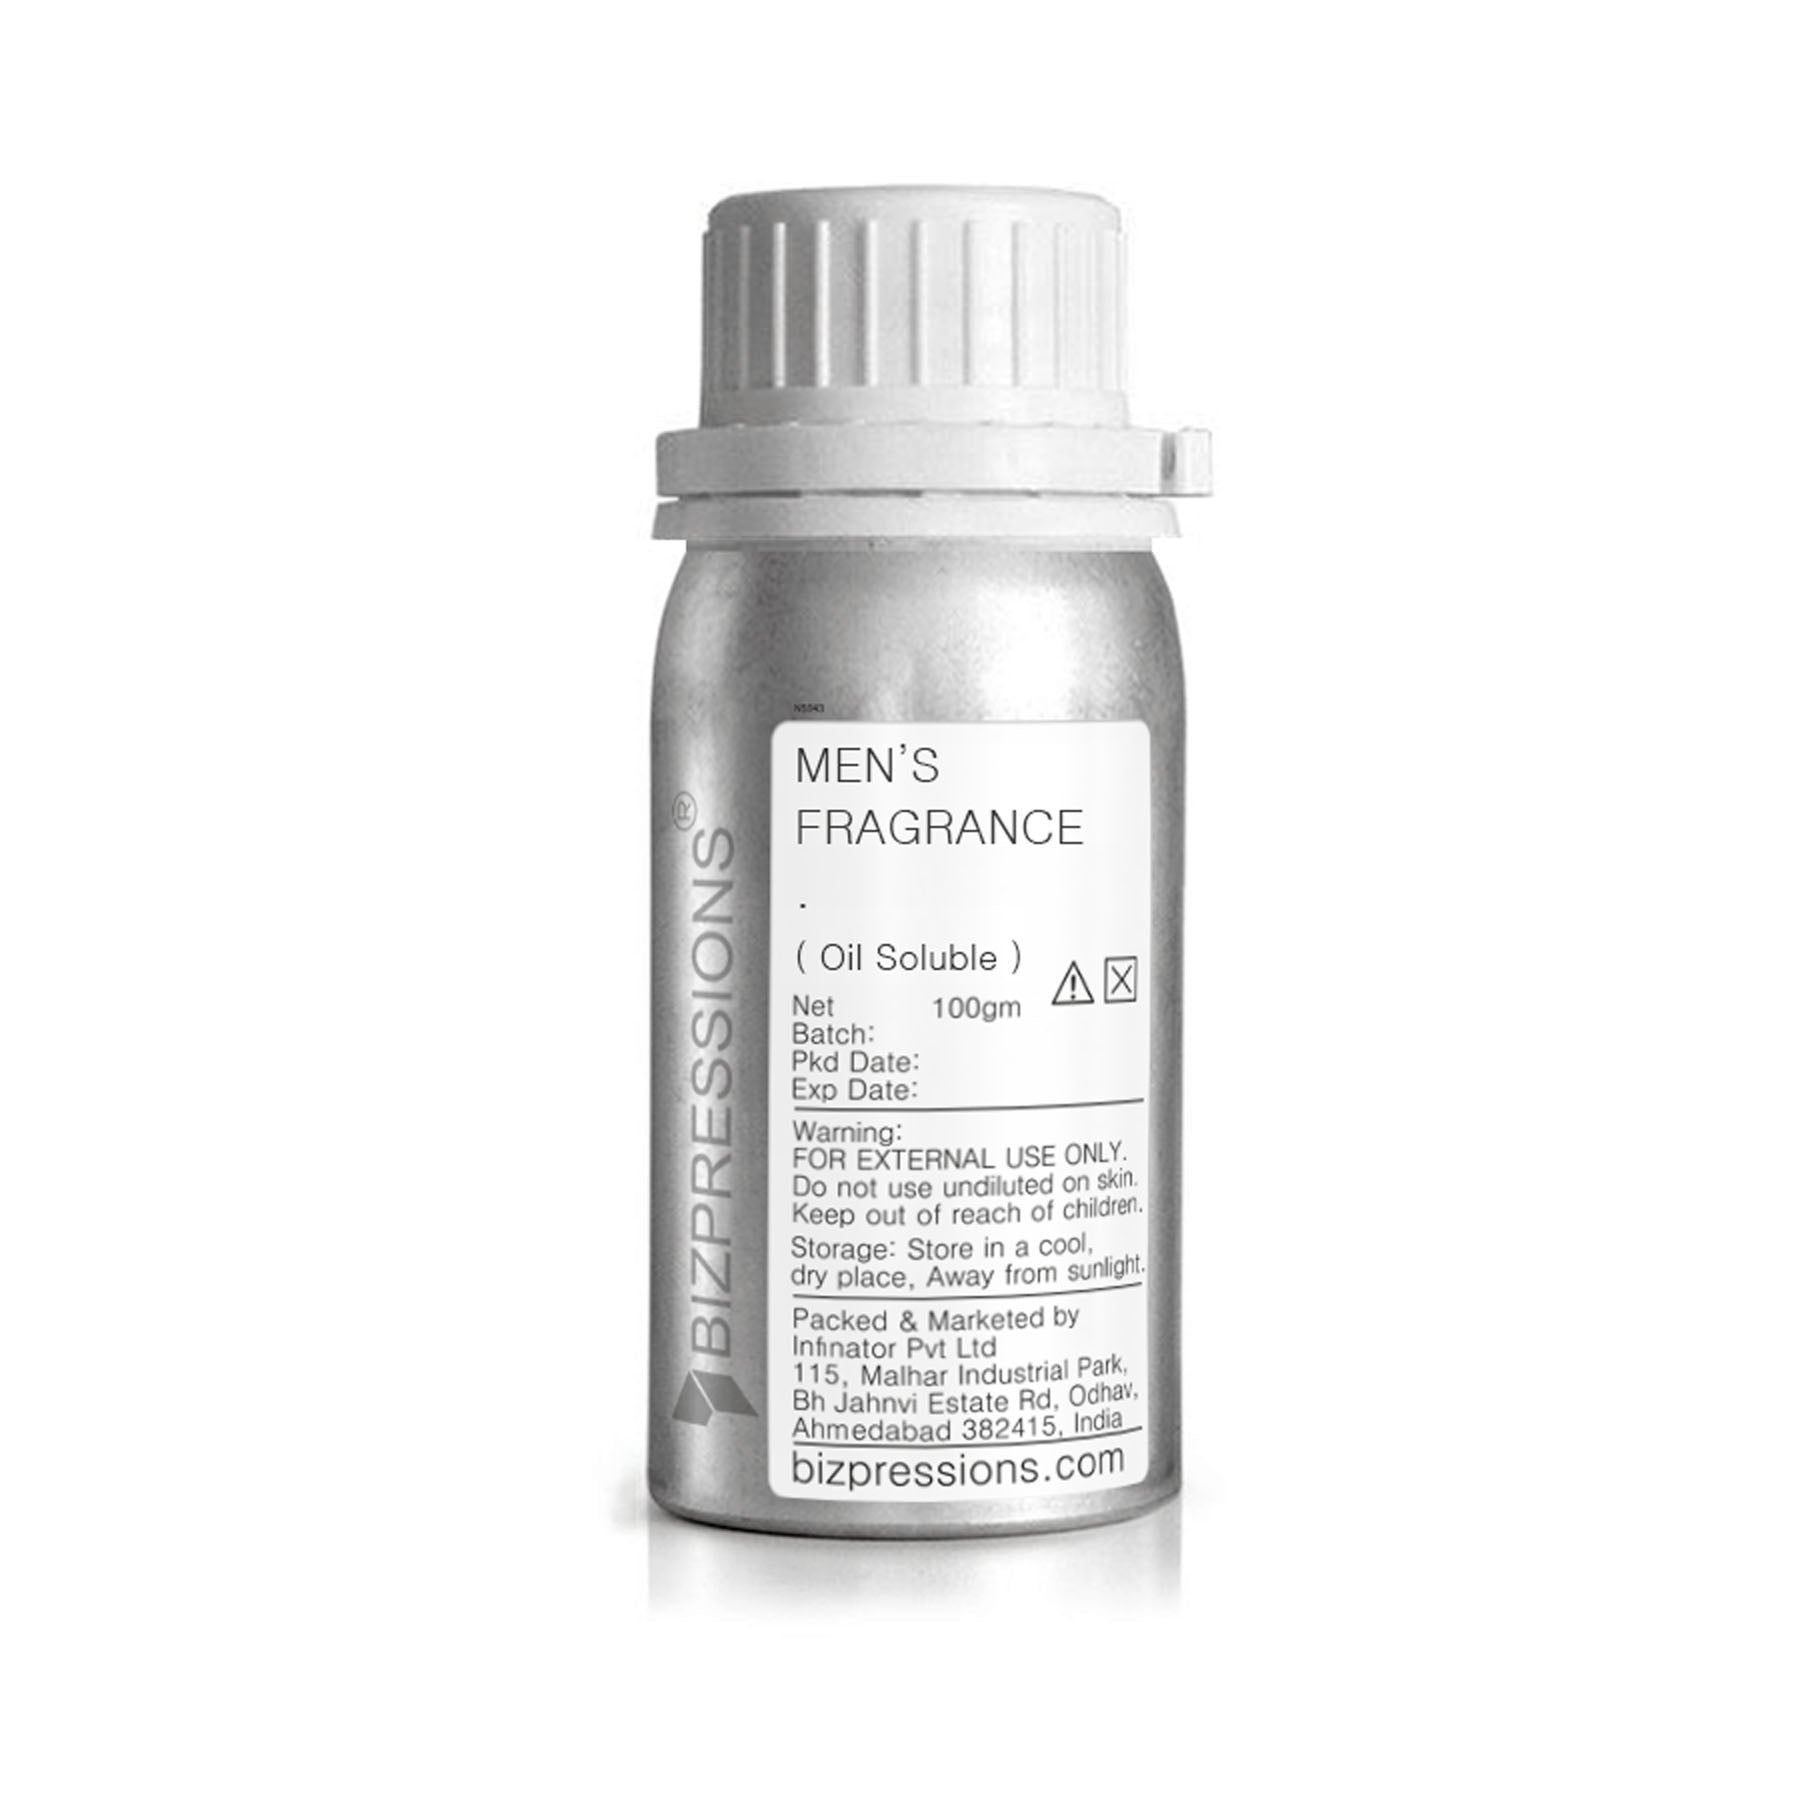 MEN'S FRAGRANCE - Fragrance ( Oil Soluble ) - 100 gm